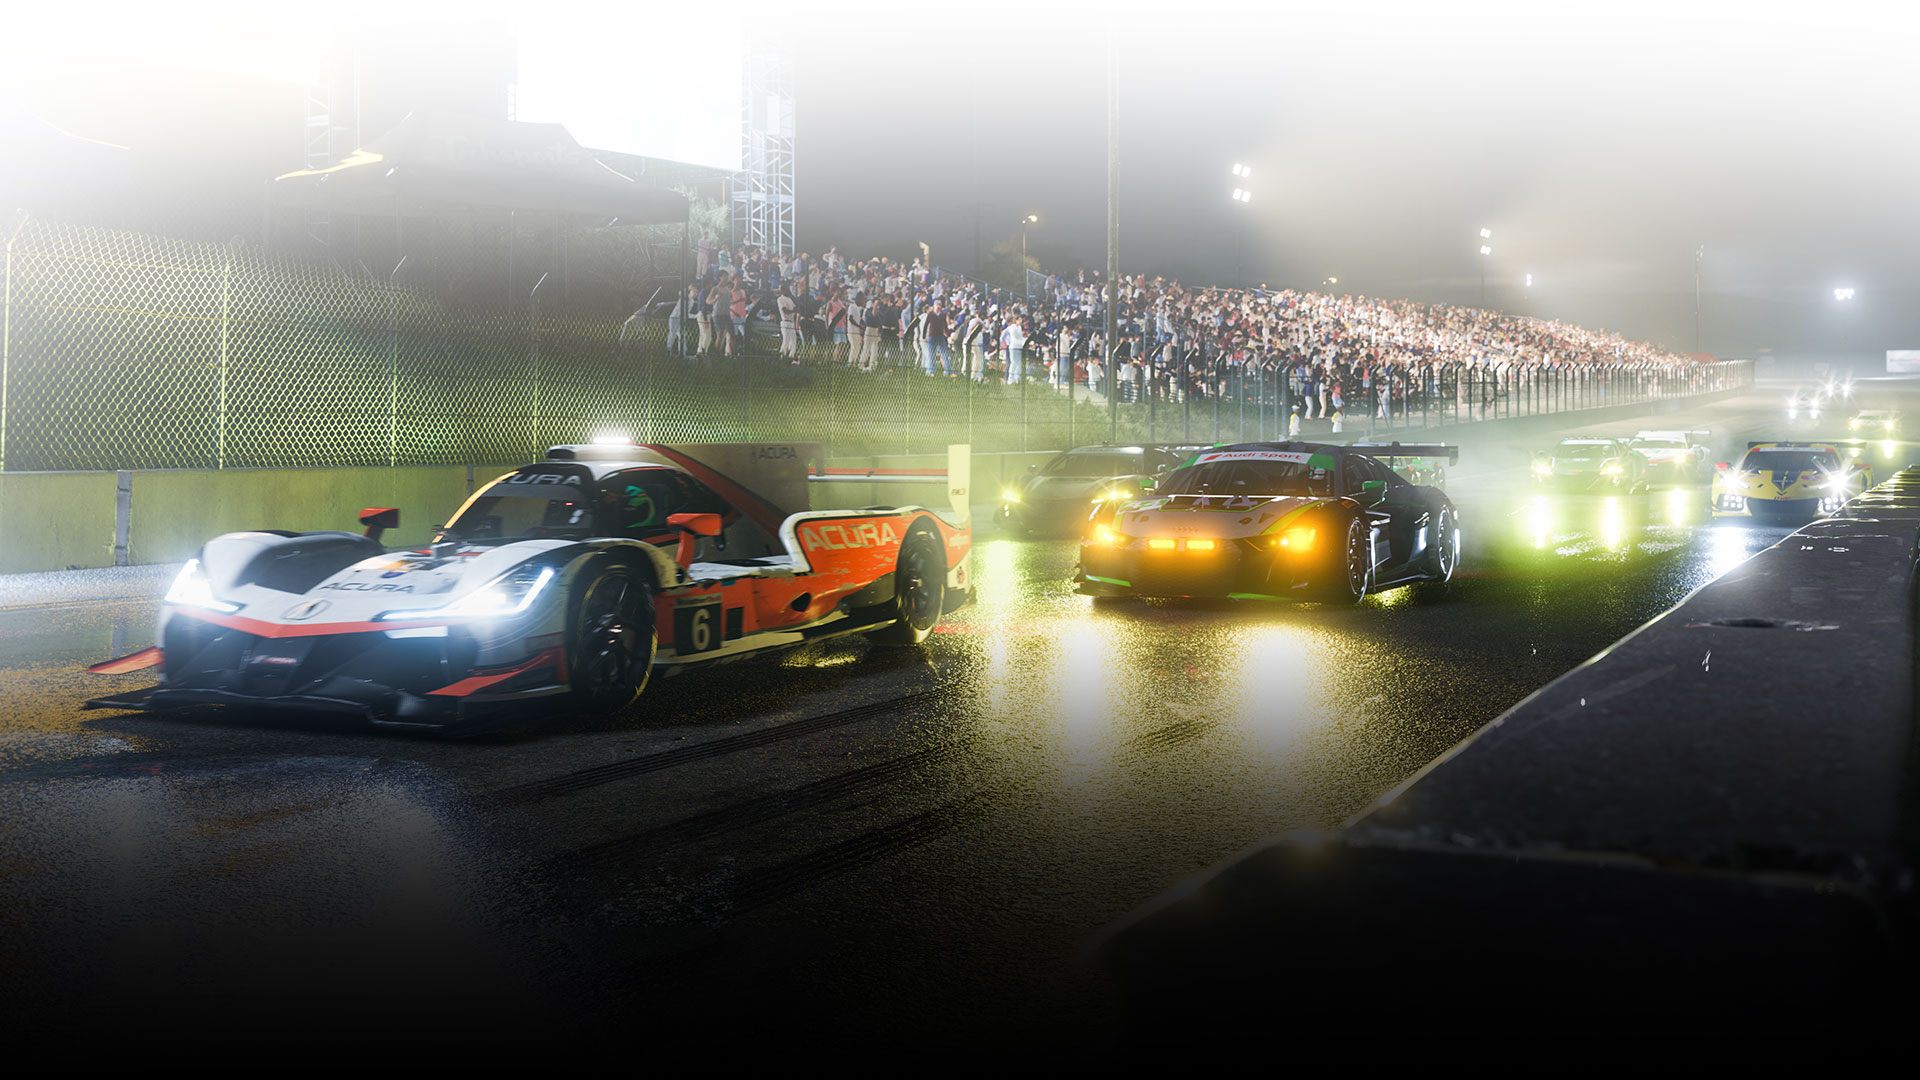 Carros de corrida se alinham em uma pista de corrida molhada à noite.